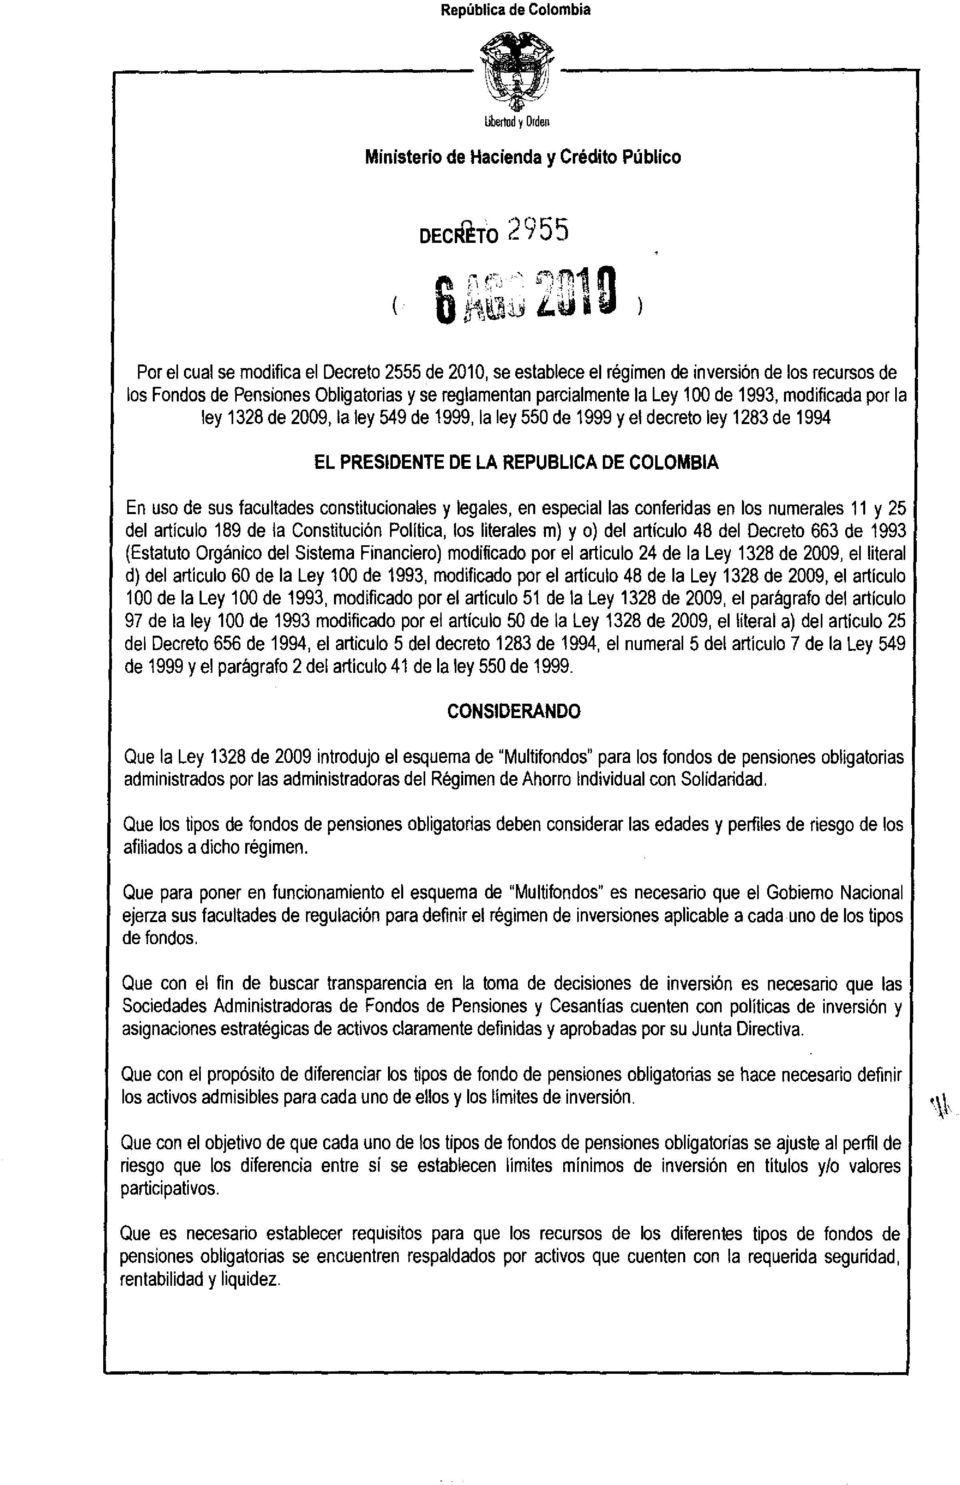 REPUBLlCA DE COLOMBIA En uso de sus facultades constitucionales y legales, en especial las conferidas en los numerales 11 y 25 del artículo 189 de la Constitución Politica, los literales m) y o) del